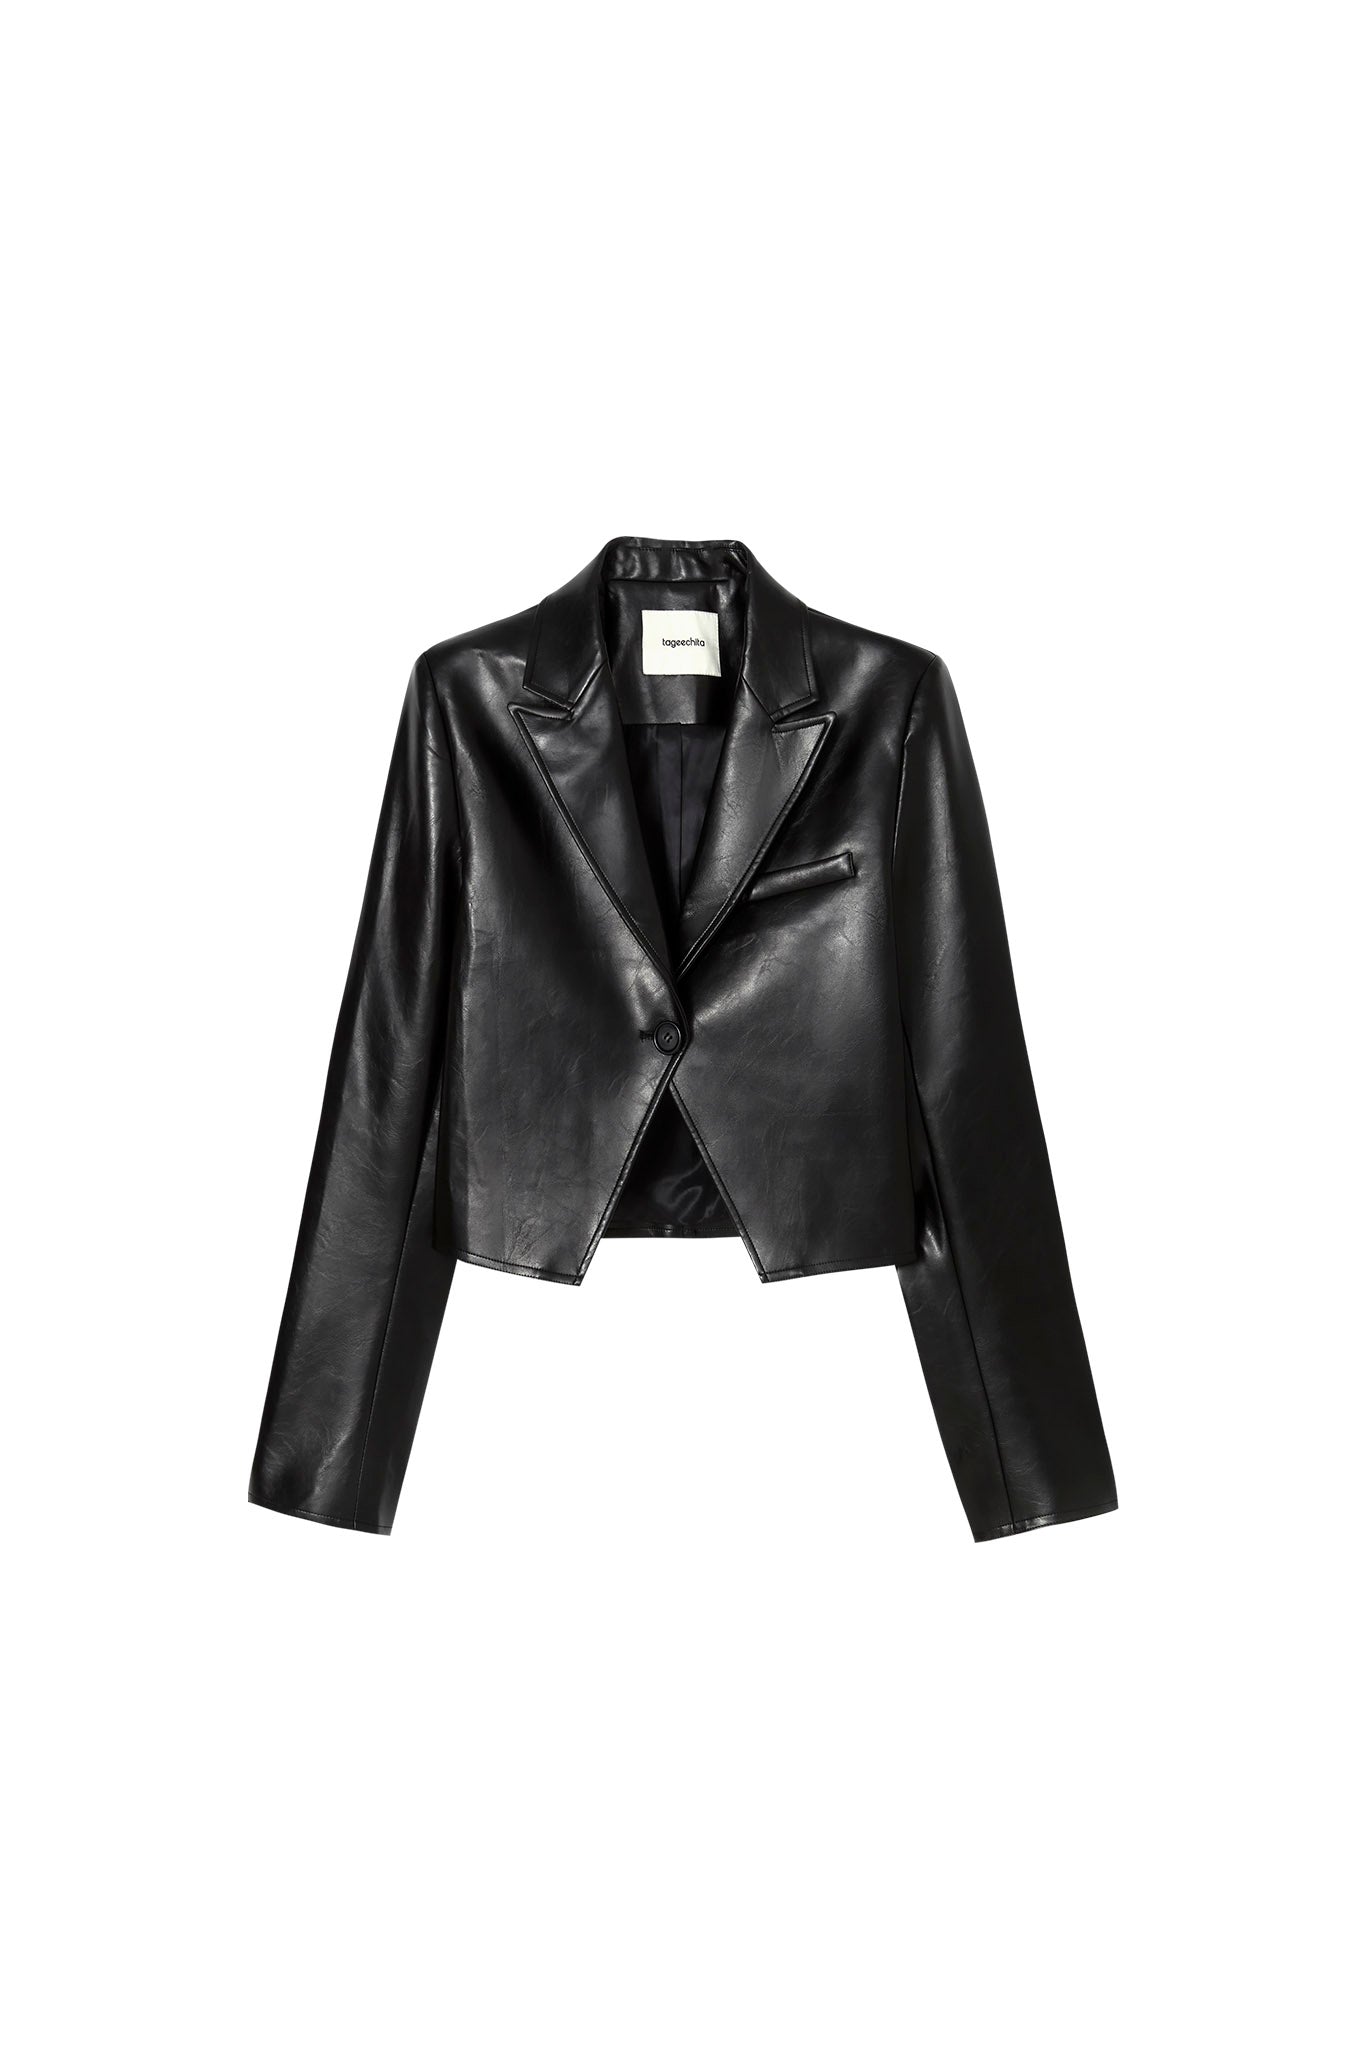 [tageechita] Short length fake leather jacket